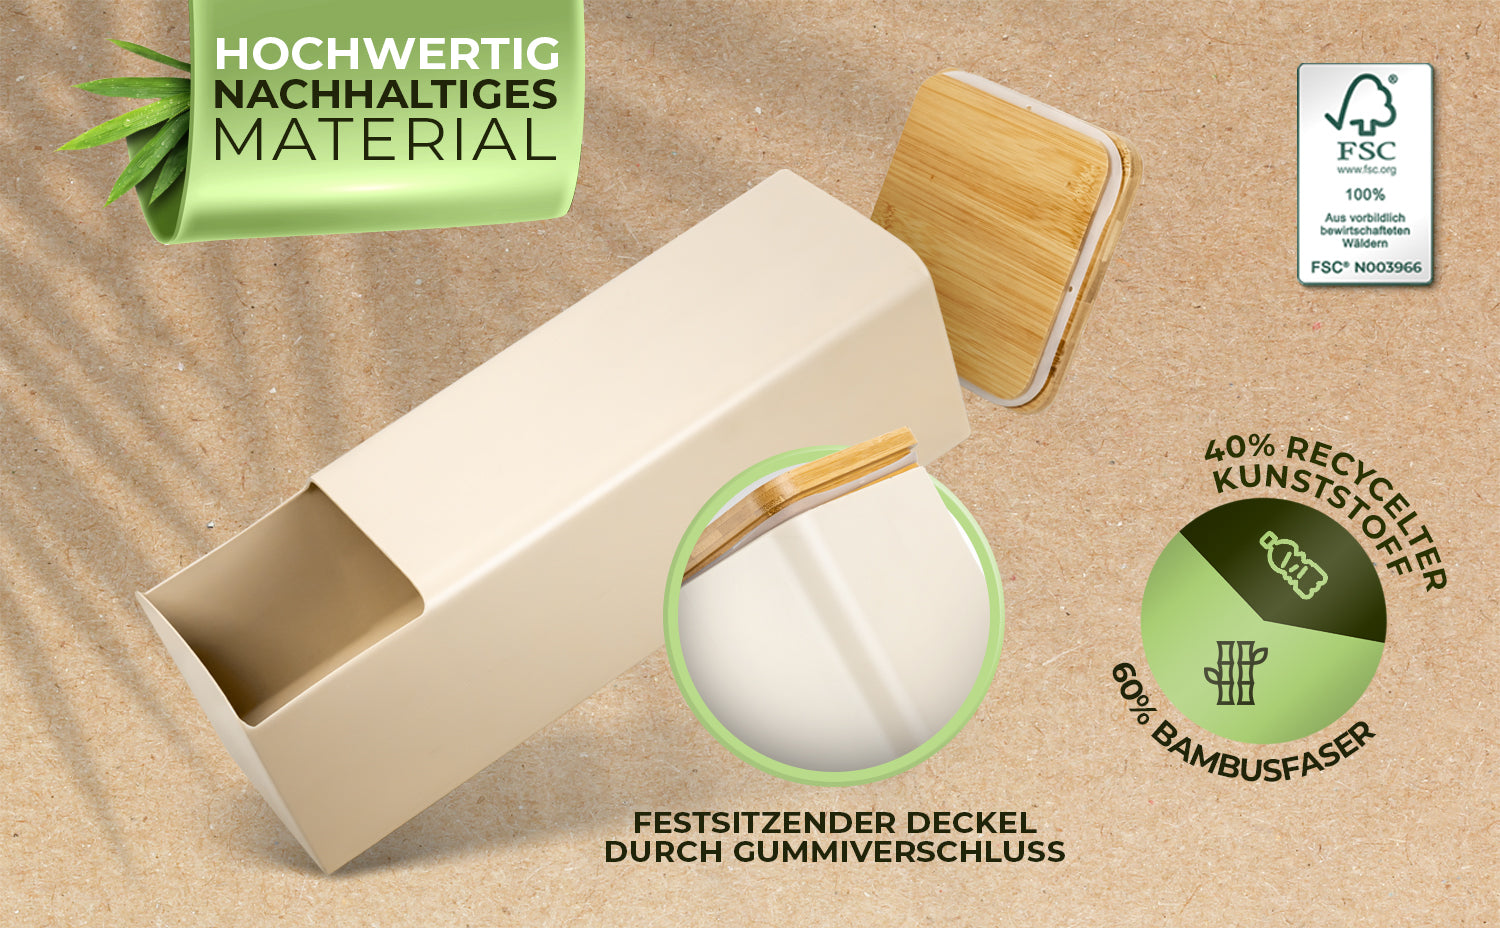 Glückstoff® Toilettenpapier Aufbewahrung [Wandanbringung möglich] aus Bambus 4 Rollen | Klopapier Aufbewahrung Bad | Beige